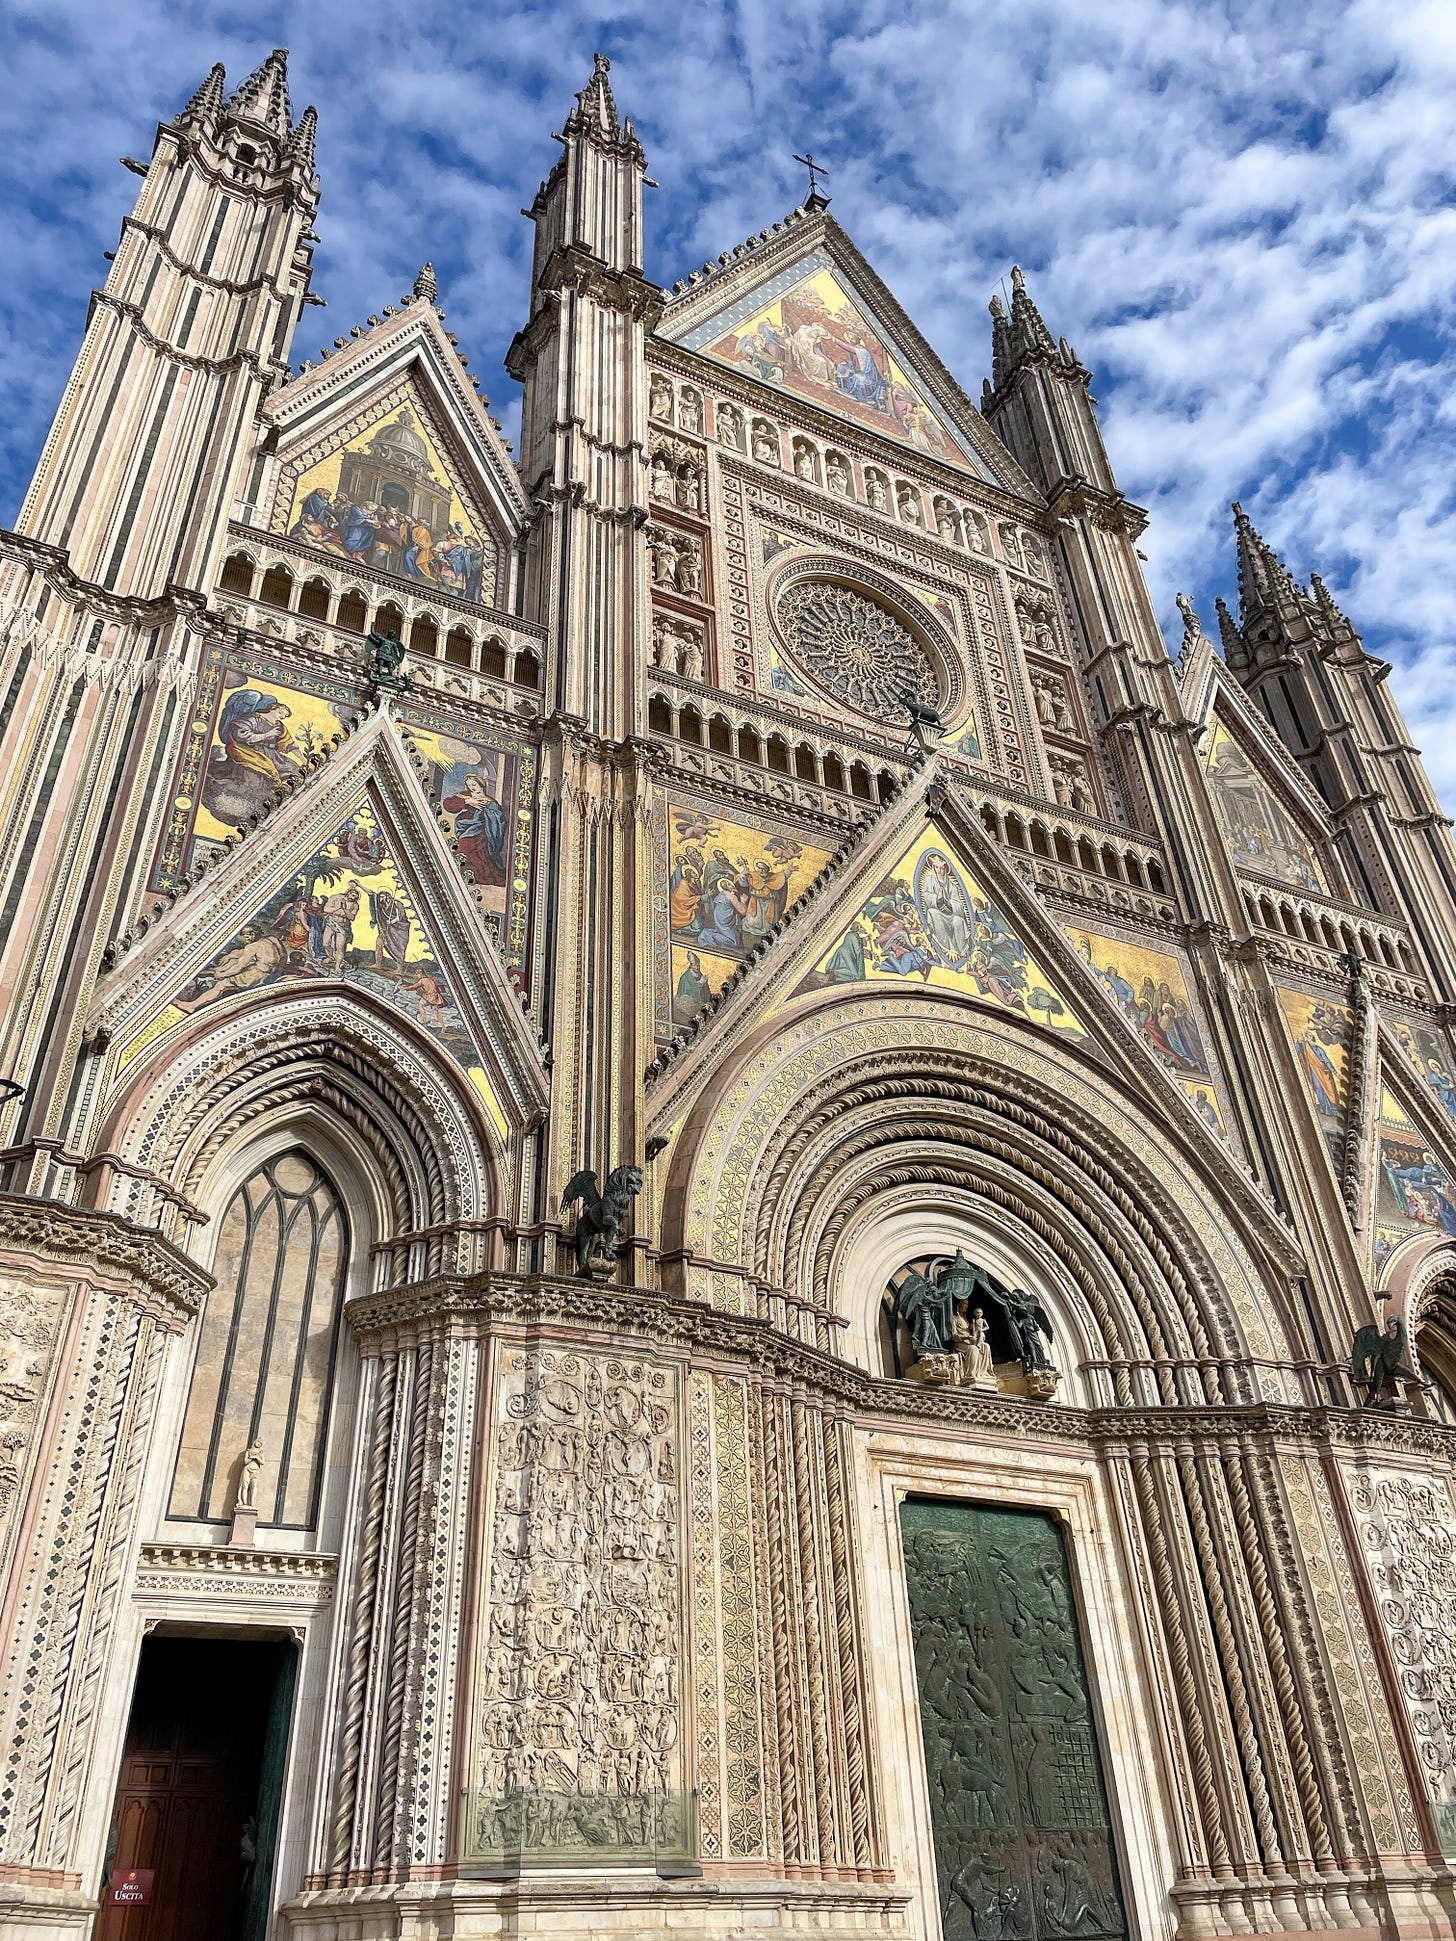 Duomo di Orvieto - Orvieto, Italy